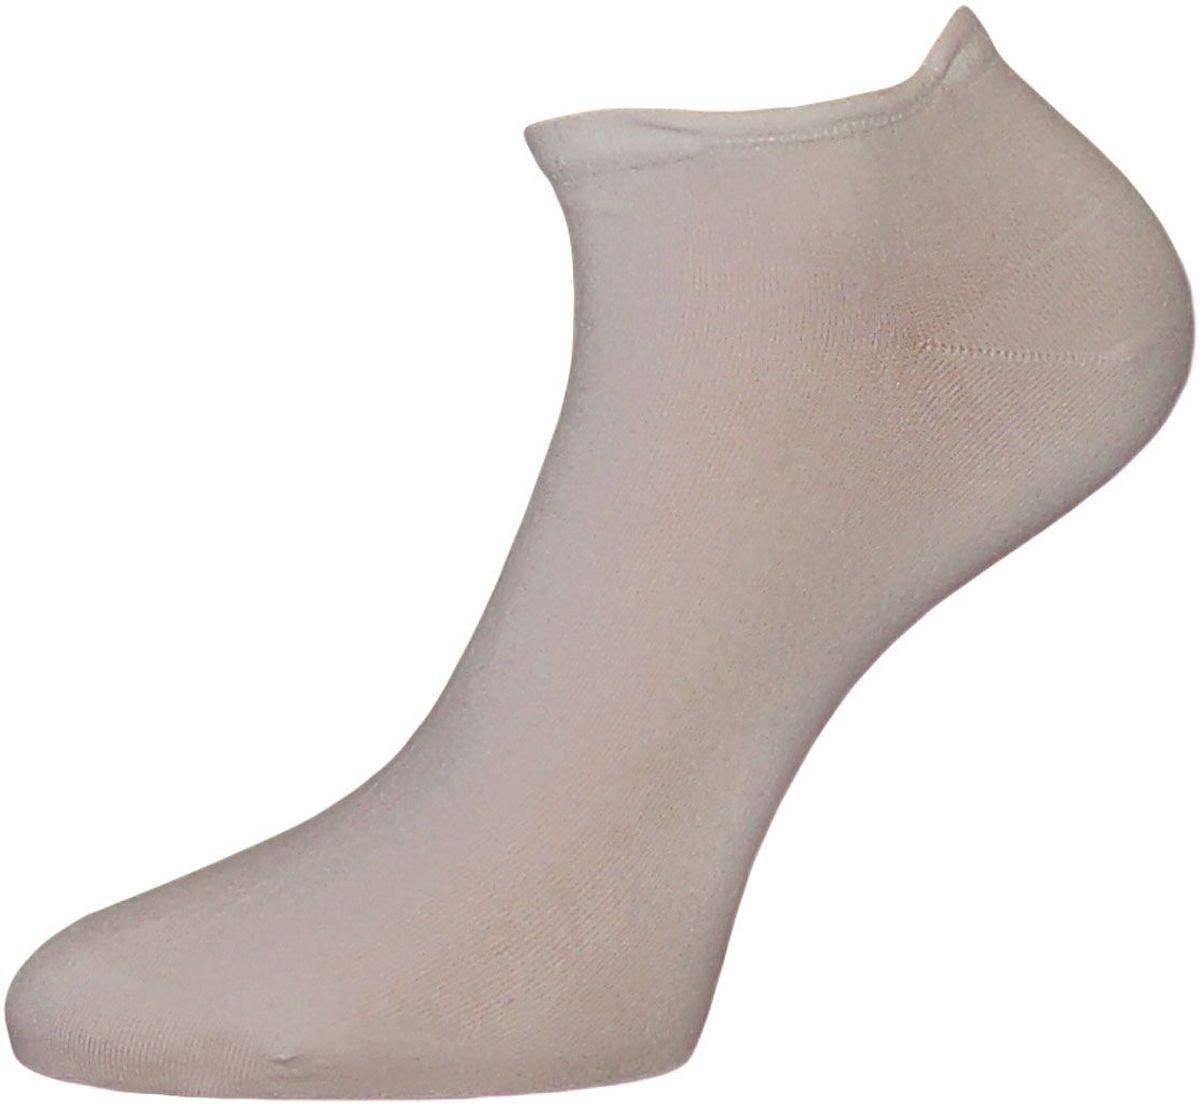 Носки мужские Гранд, цвет: серый, 2 пары. ZCL4. Размер 25/27